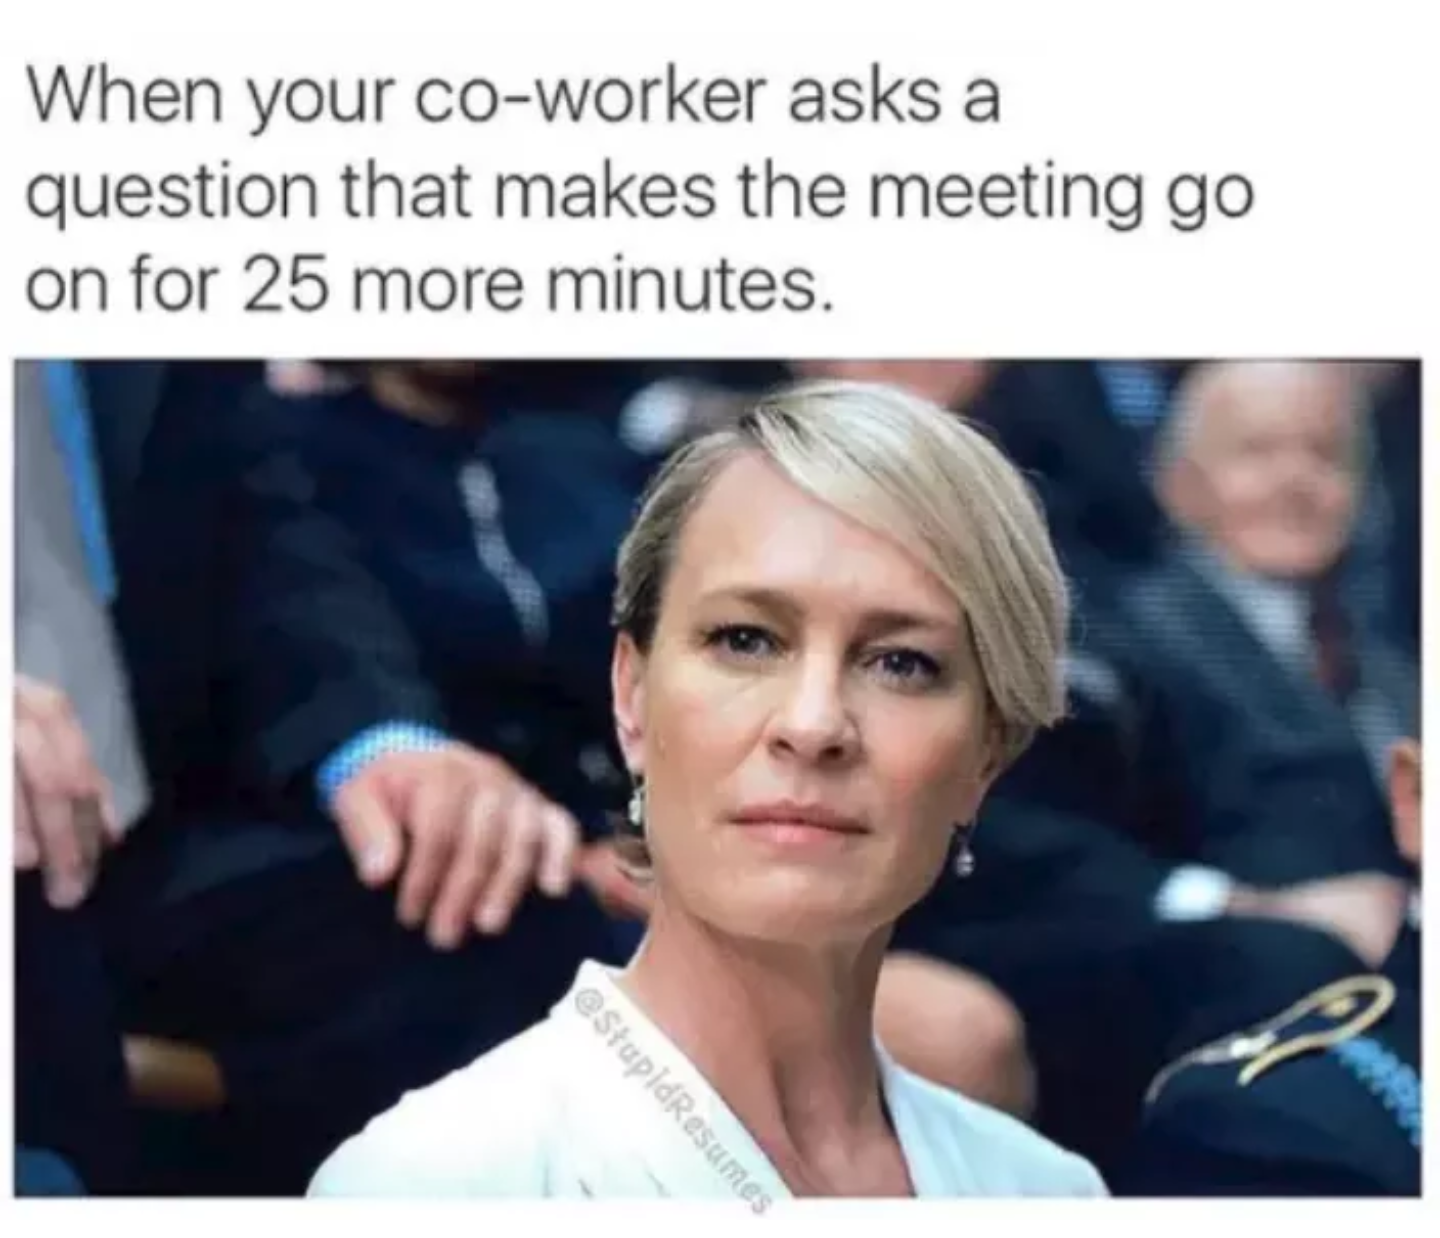 Work meetings